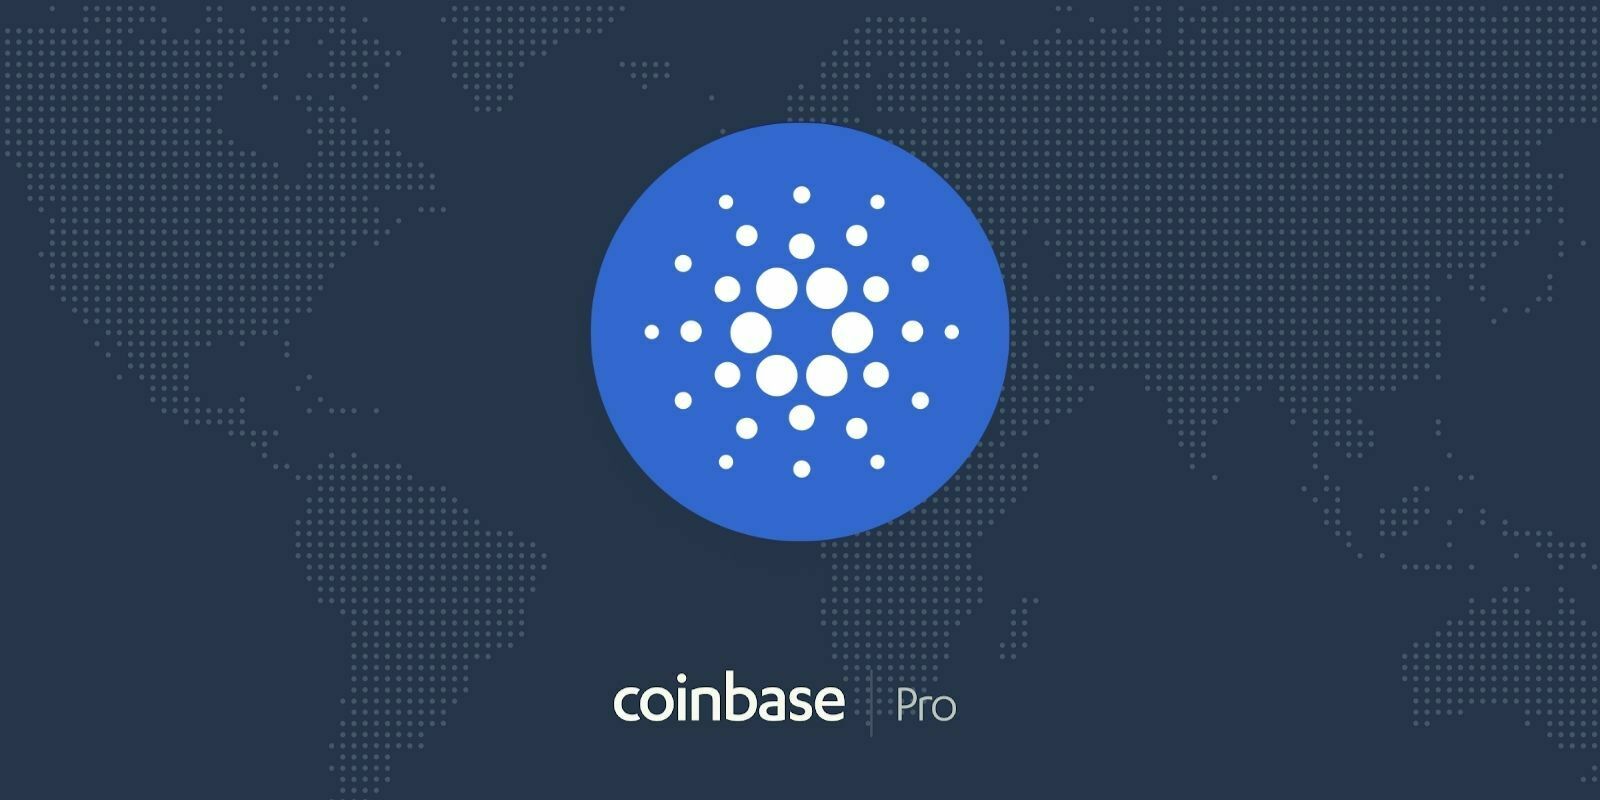 Coinbase Pro ajoute l'ADA de la blockchain Cardano - Son cours grimpe de +20%